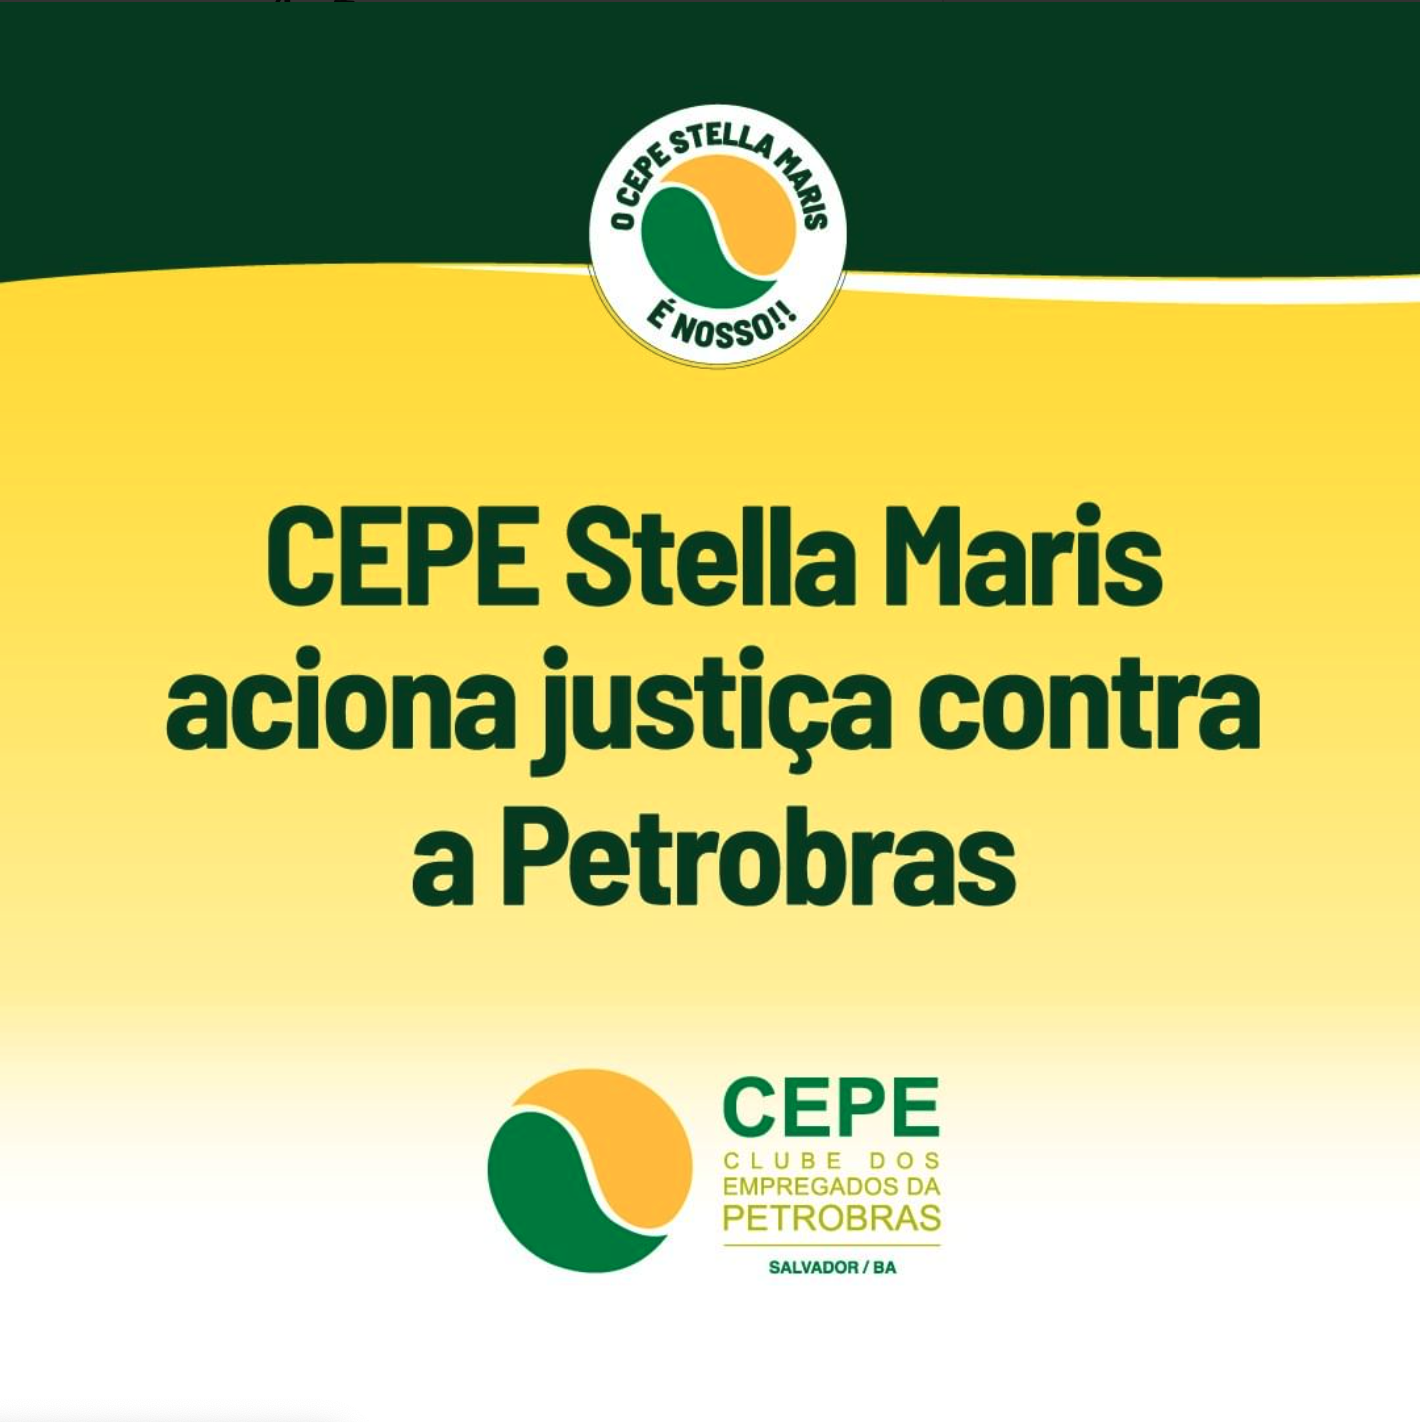 FCEPE – Federação dos Clubes dos Empregados da Petrobras